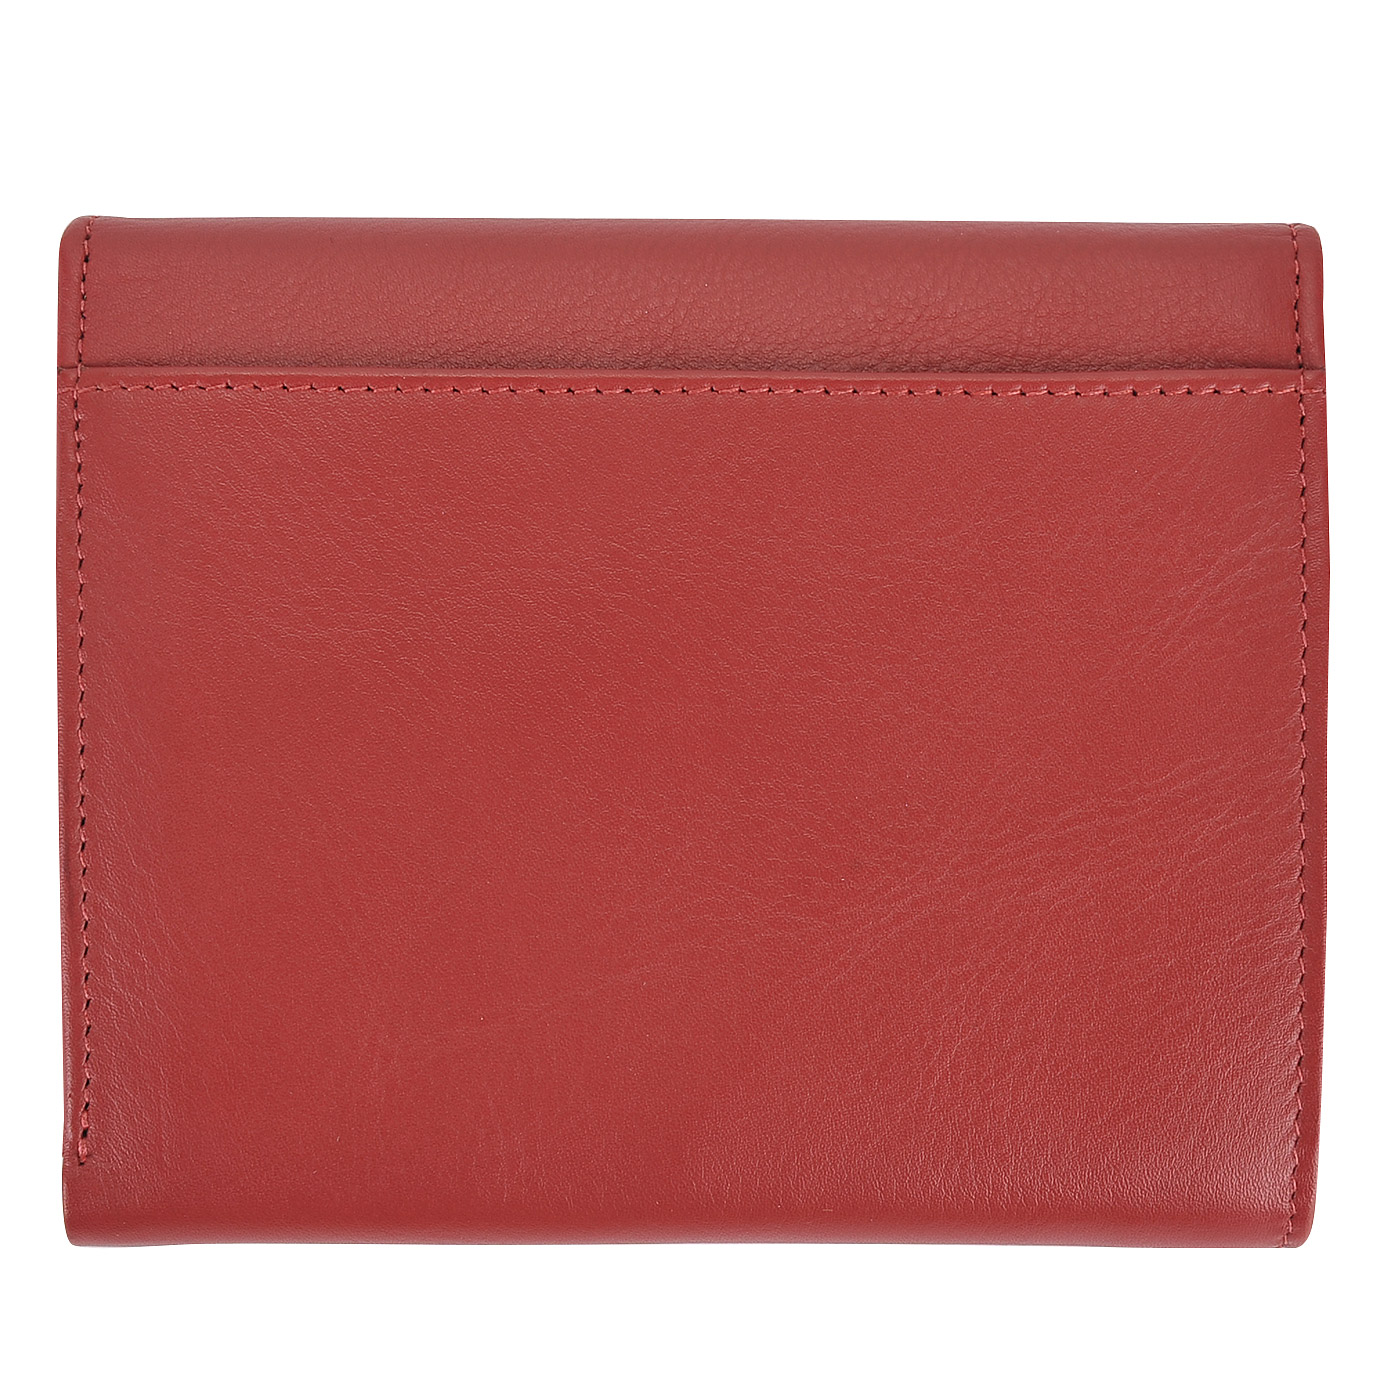 Женское кожаное портмоне красного цвета Braun Buffel HM Nappa